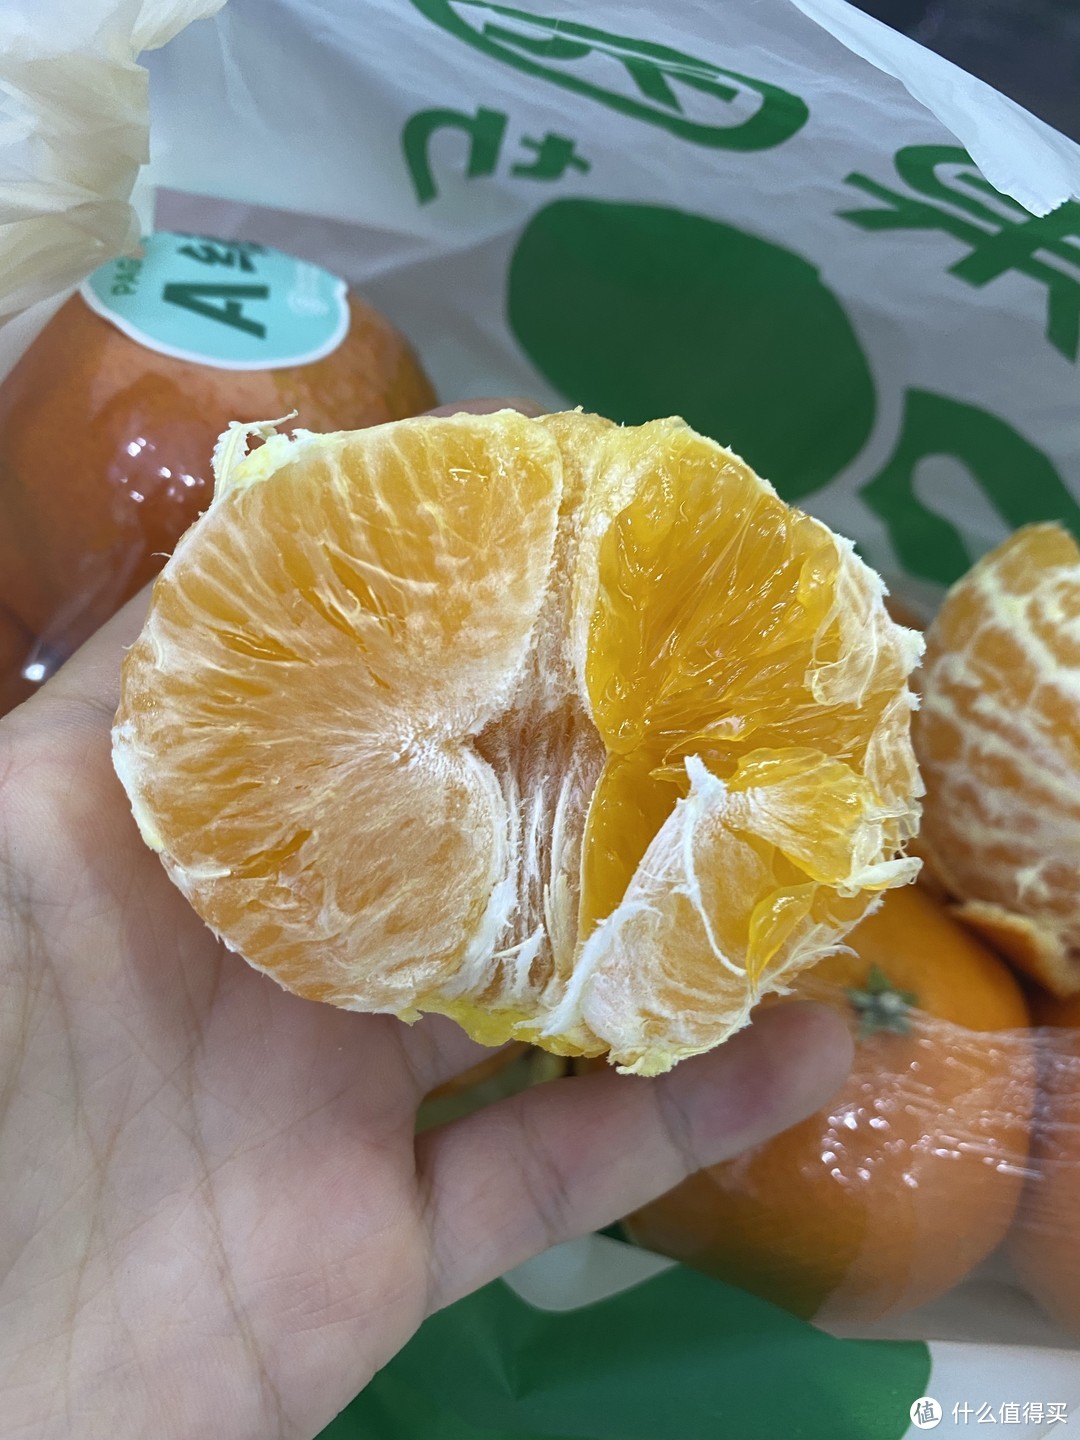 百果园也太贵了吧10个橘子要50块钱。